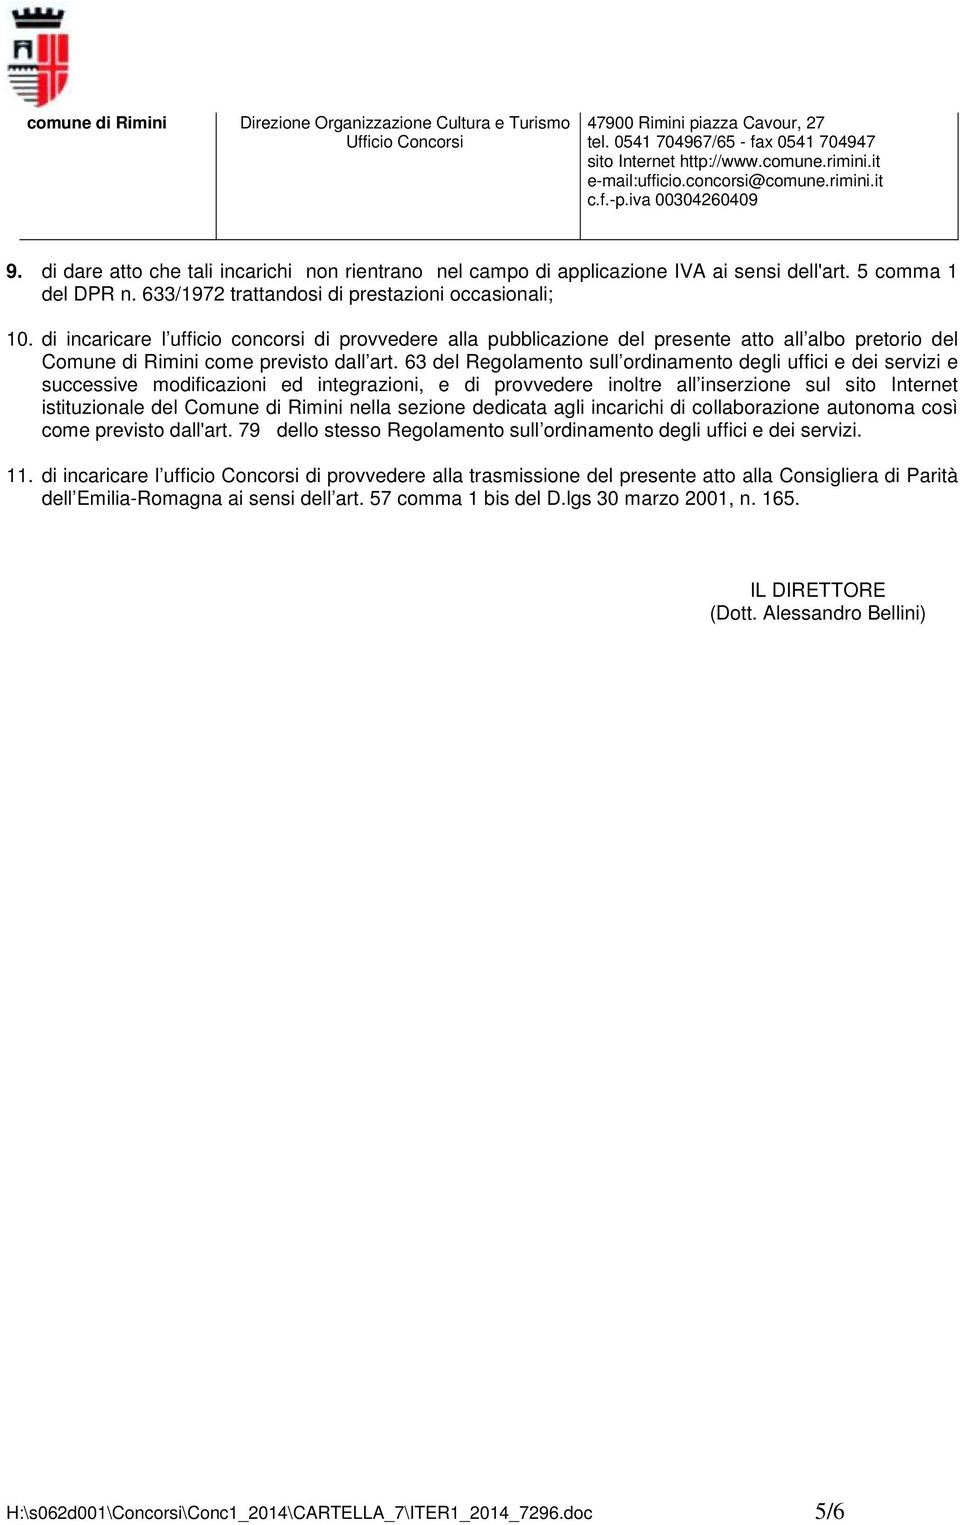 63 del Regolamento sull ordinamento degli uffici e dei servizi e successive modificazioni ed integrazioni, e di provvedere inoltre all inserzione sul sito Internet istituzionale del Comune di Rimini